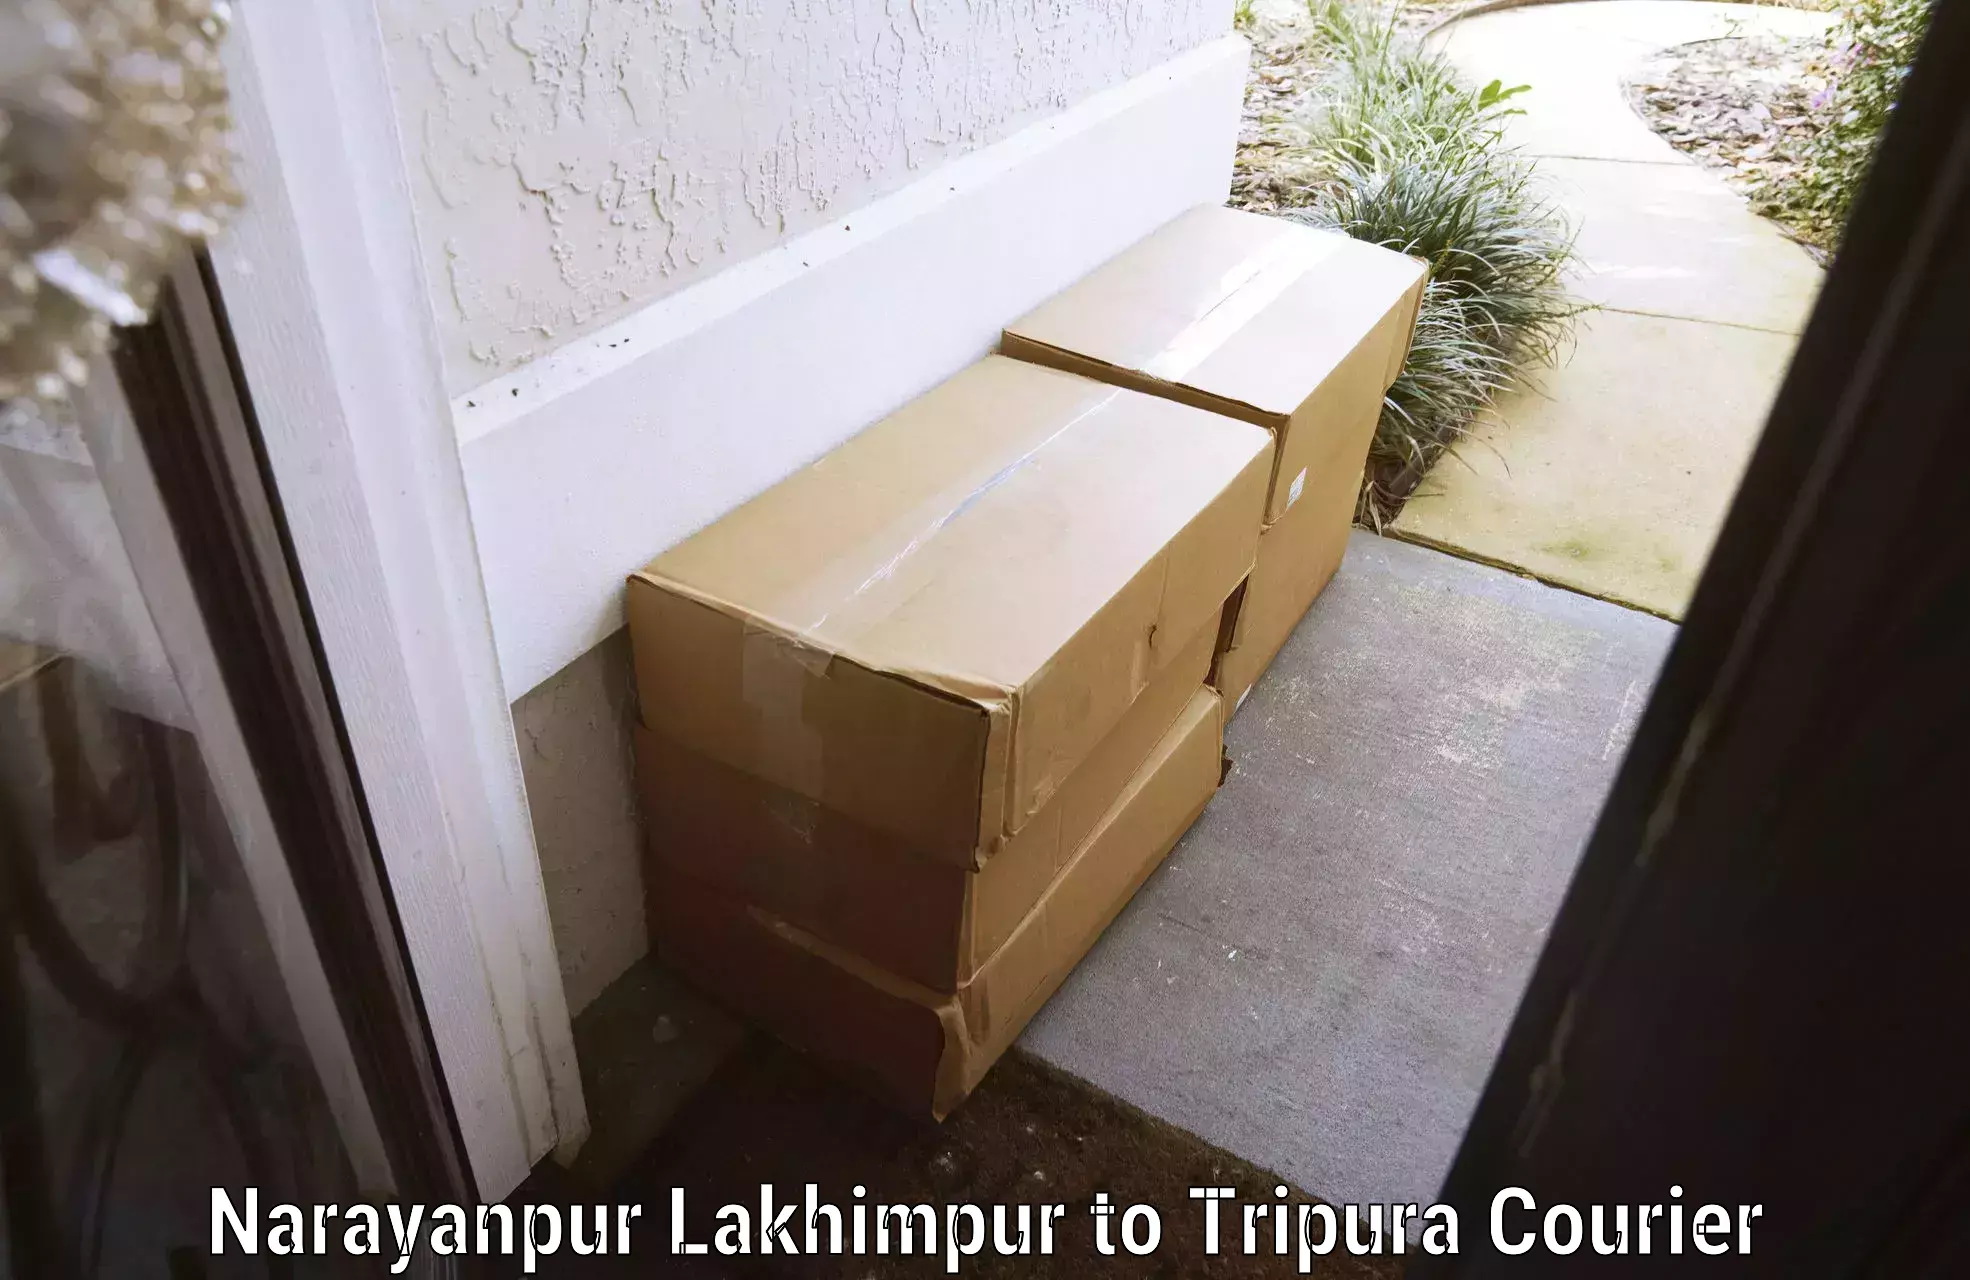 Excess baggage transport Narayanpur Lakhimpur to NIT Agartala